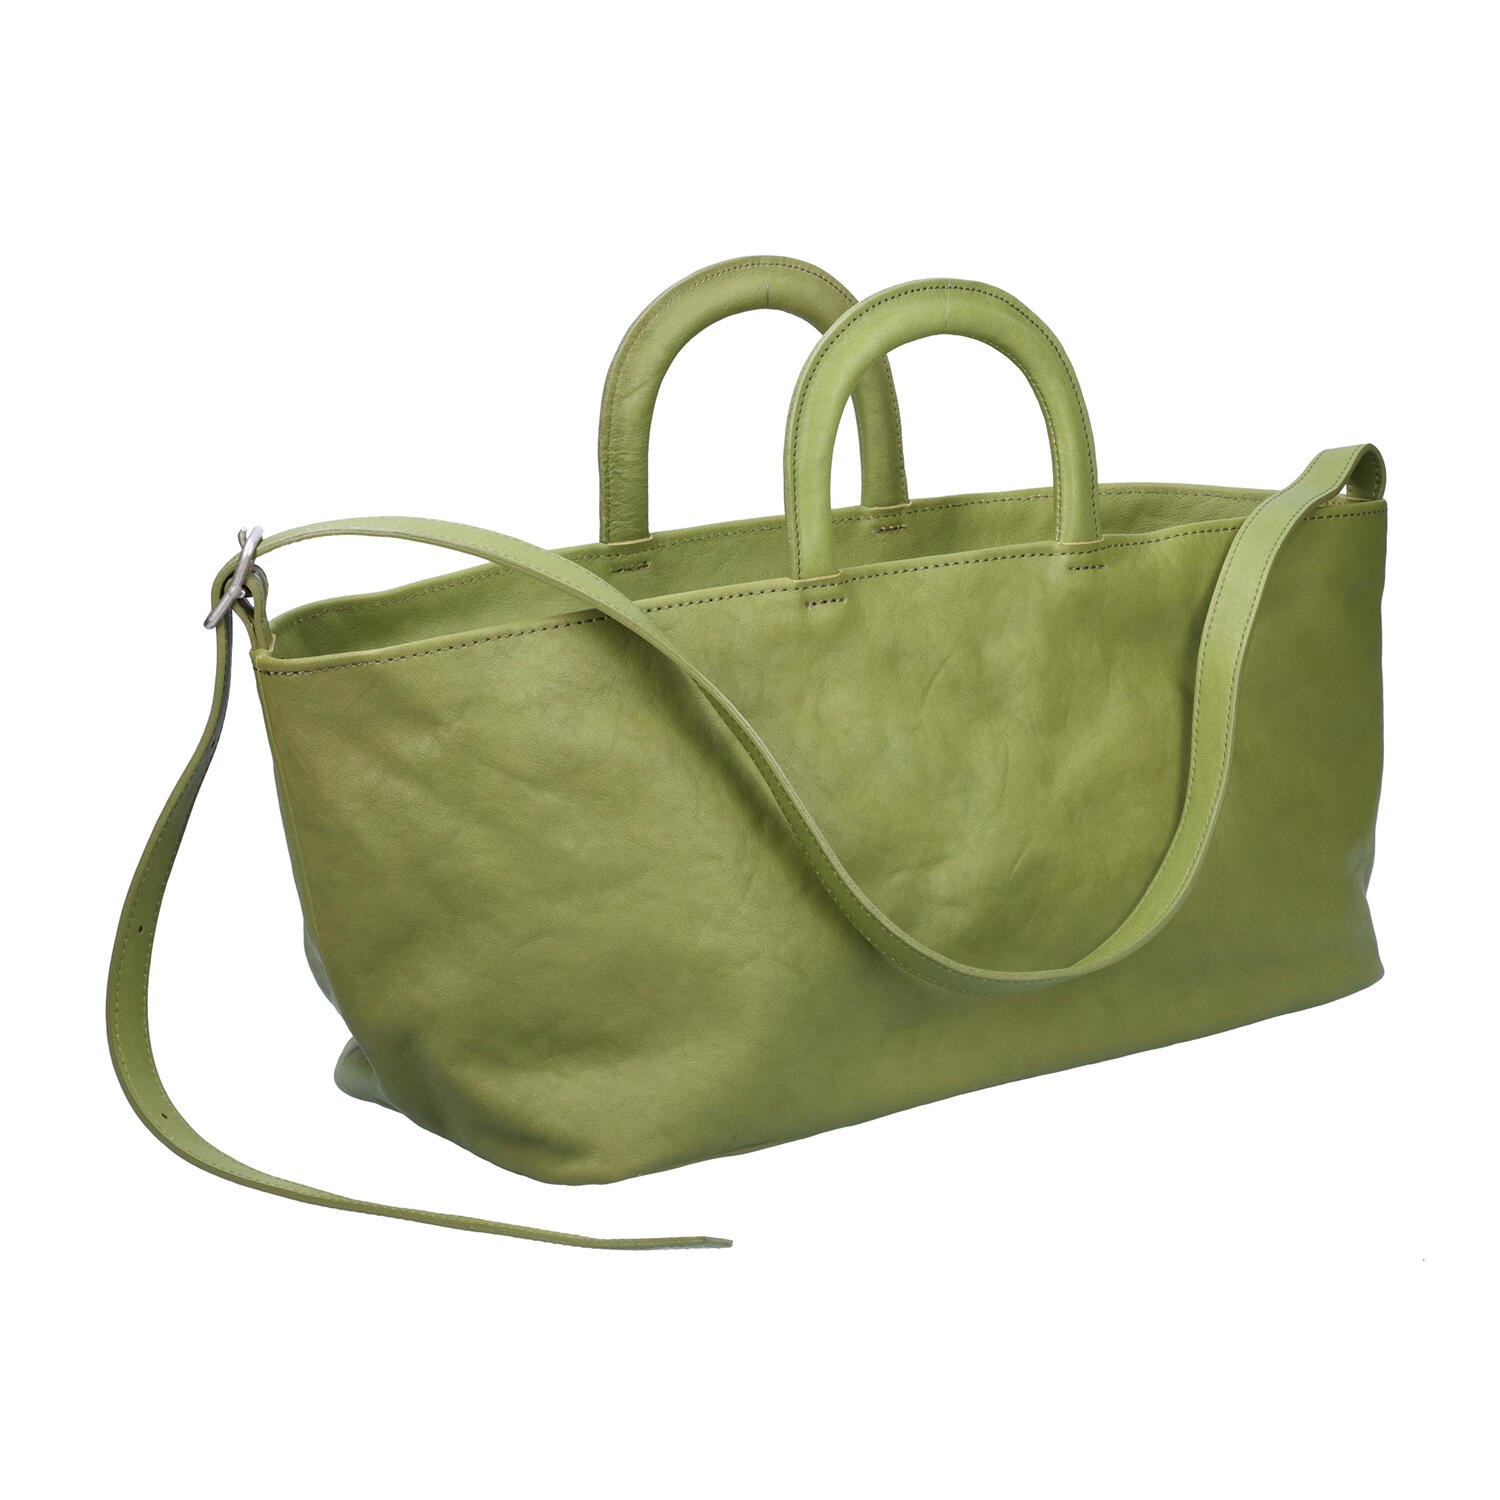 9425円 品質が完璧 ハンドバッグ オールレザー 牛革 ネイビー グリーン 青緑 ブルーグリーン 鞄